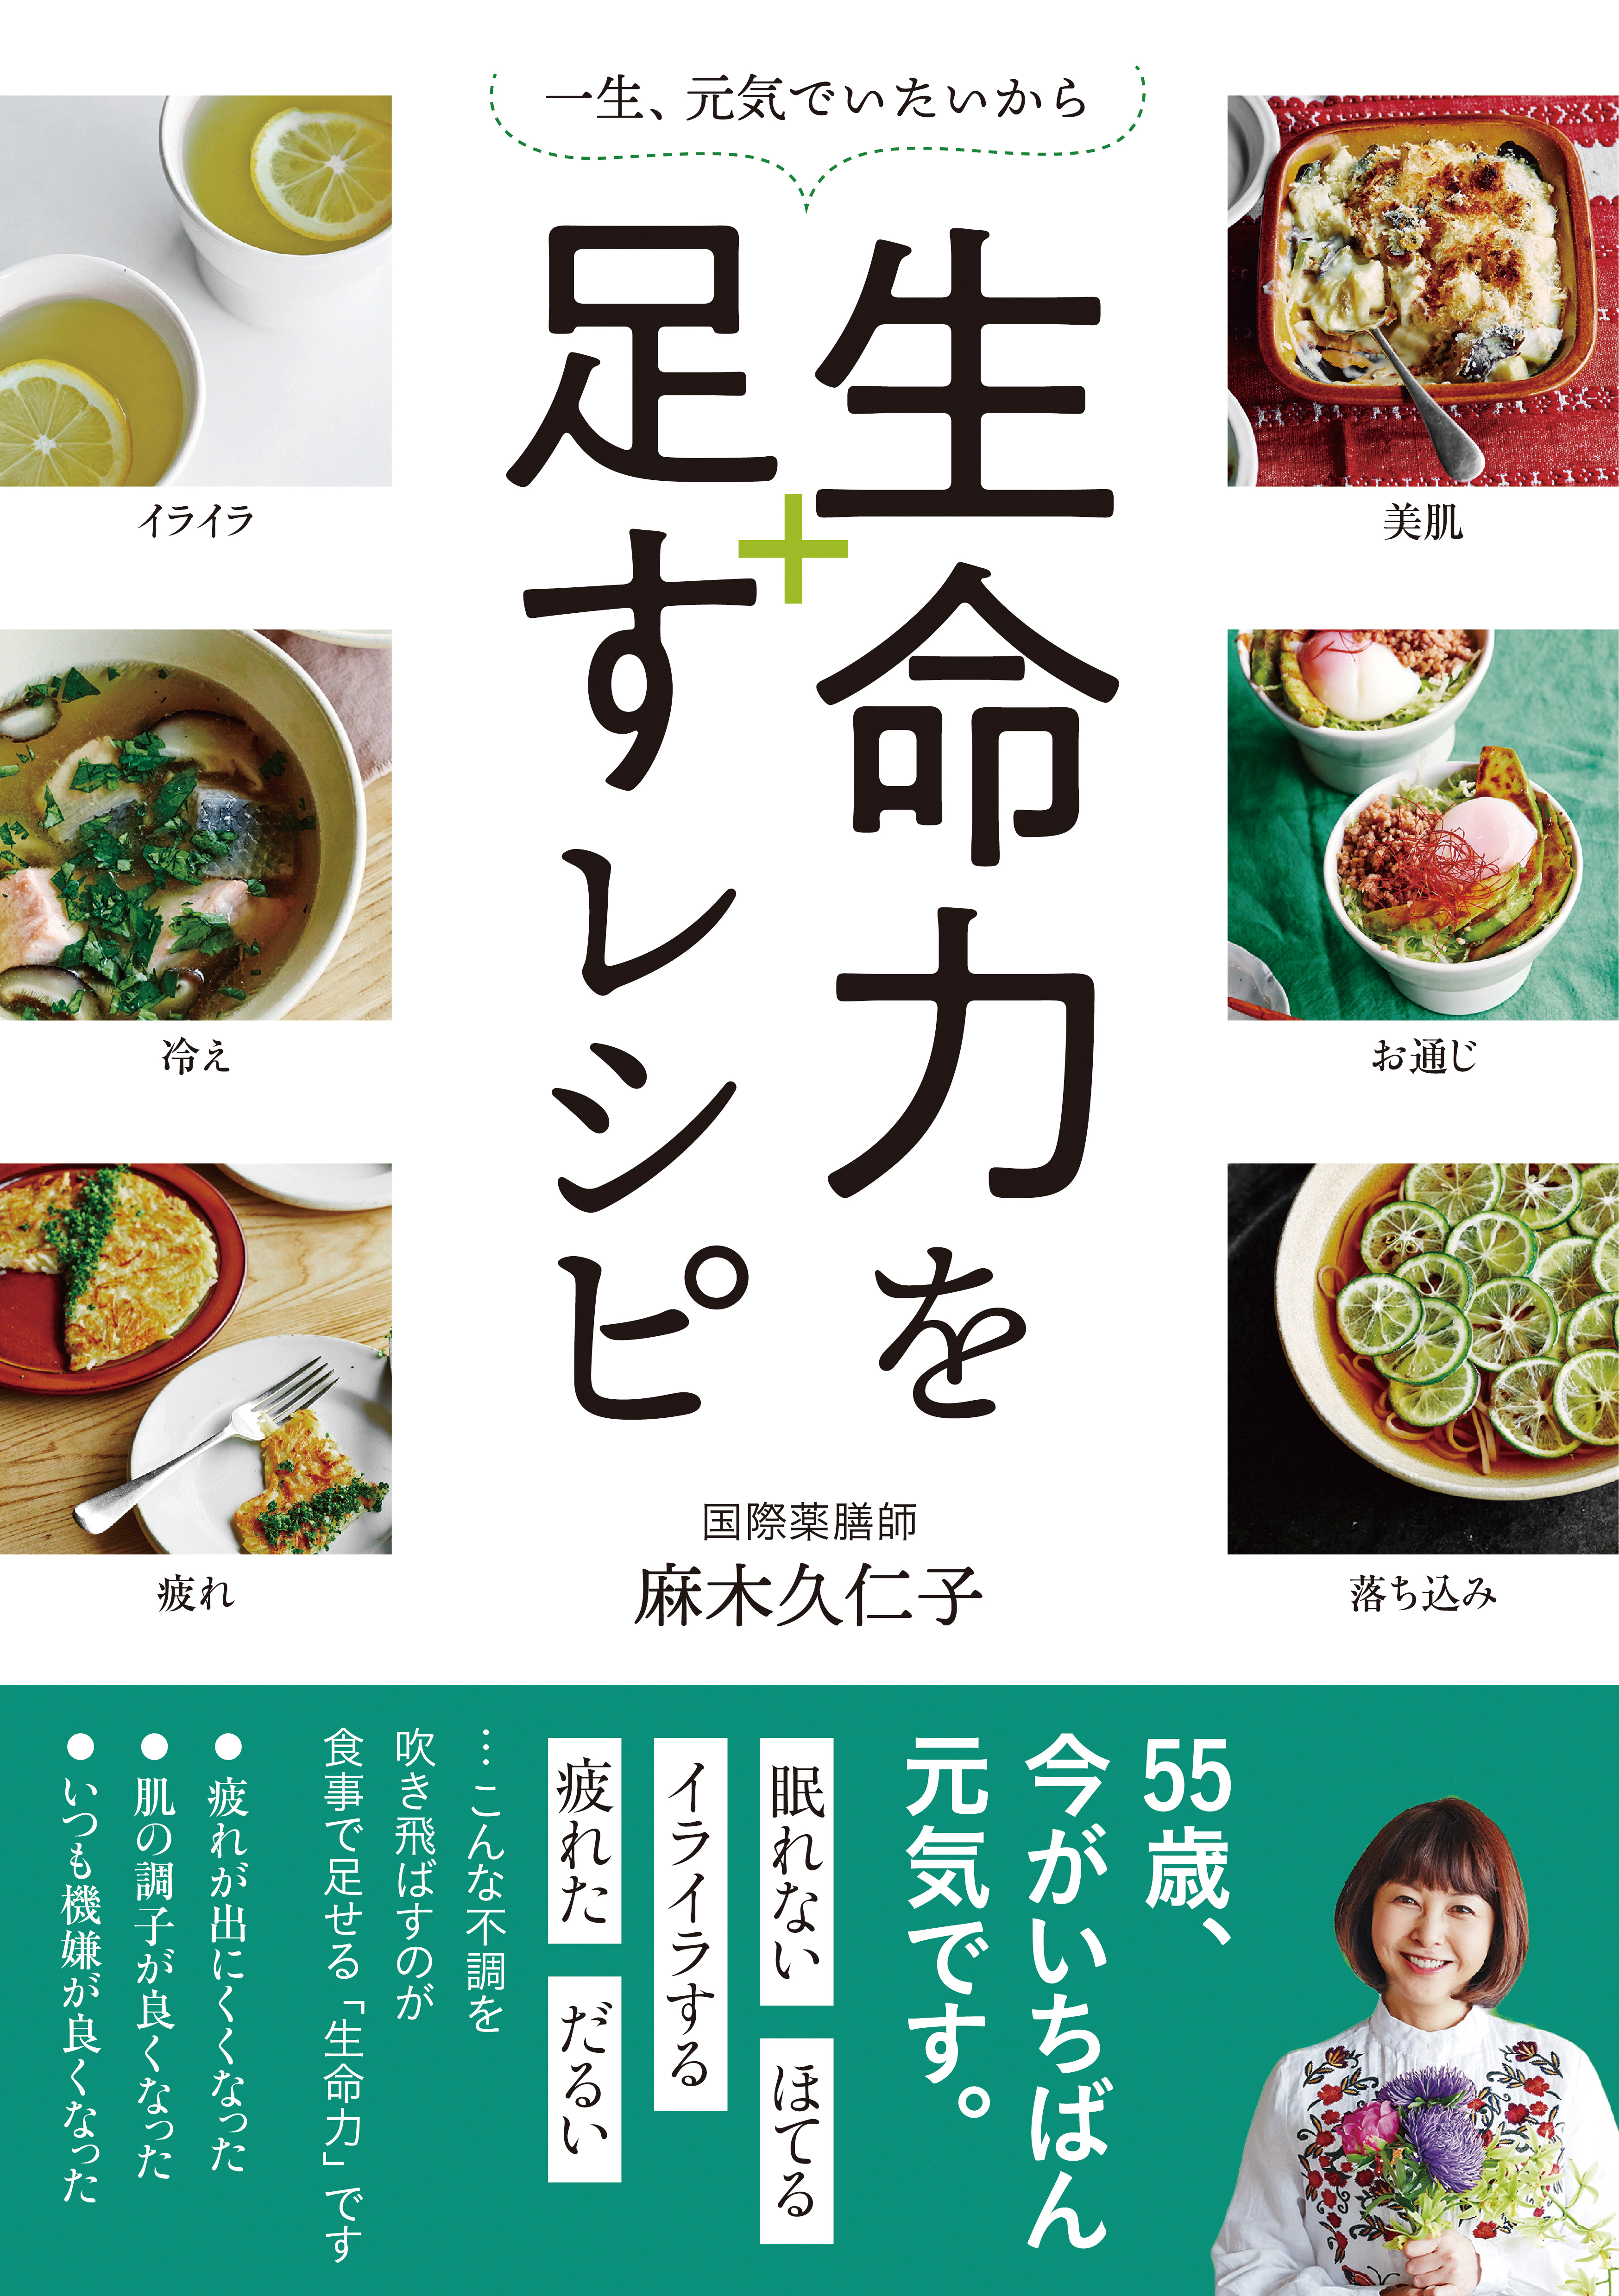 実は･･･ハンバーガーも「薬膳」です。麻木久仁子さんが教える「正しい薬膳の考え方」 127-H1-reimeiryoku.jpg